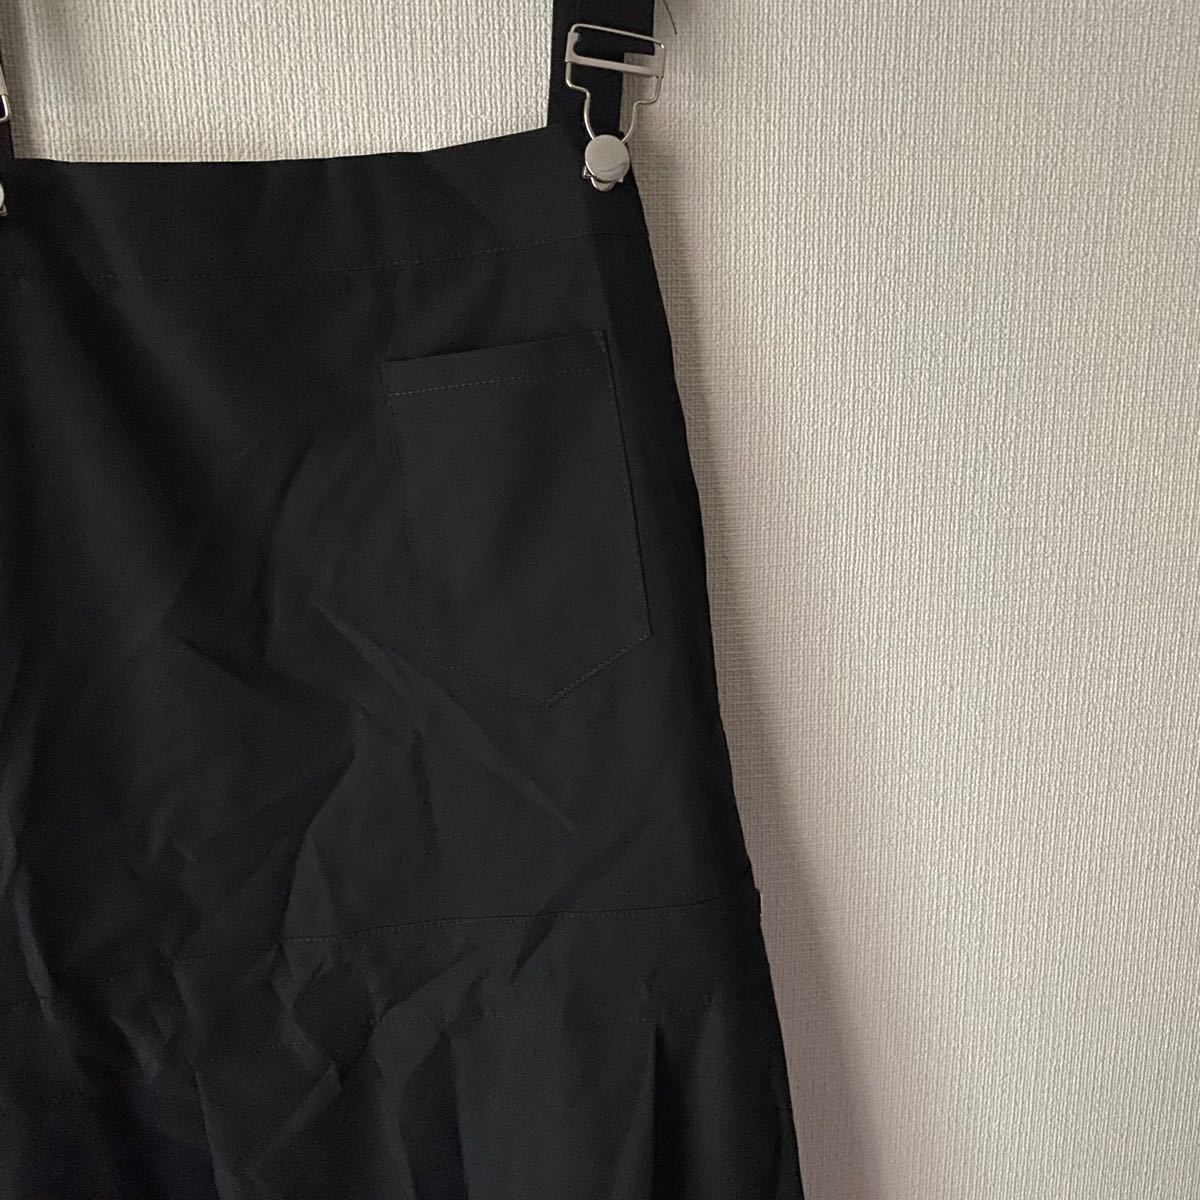 ジャンパースカート サロペット スカート ワンピース 黒 ブラック 韓国 オルチャン ポケット ママさん 即購入可